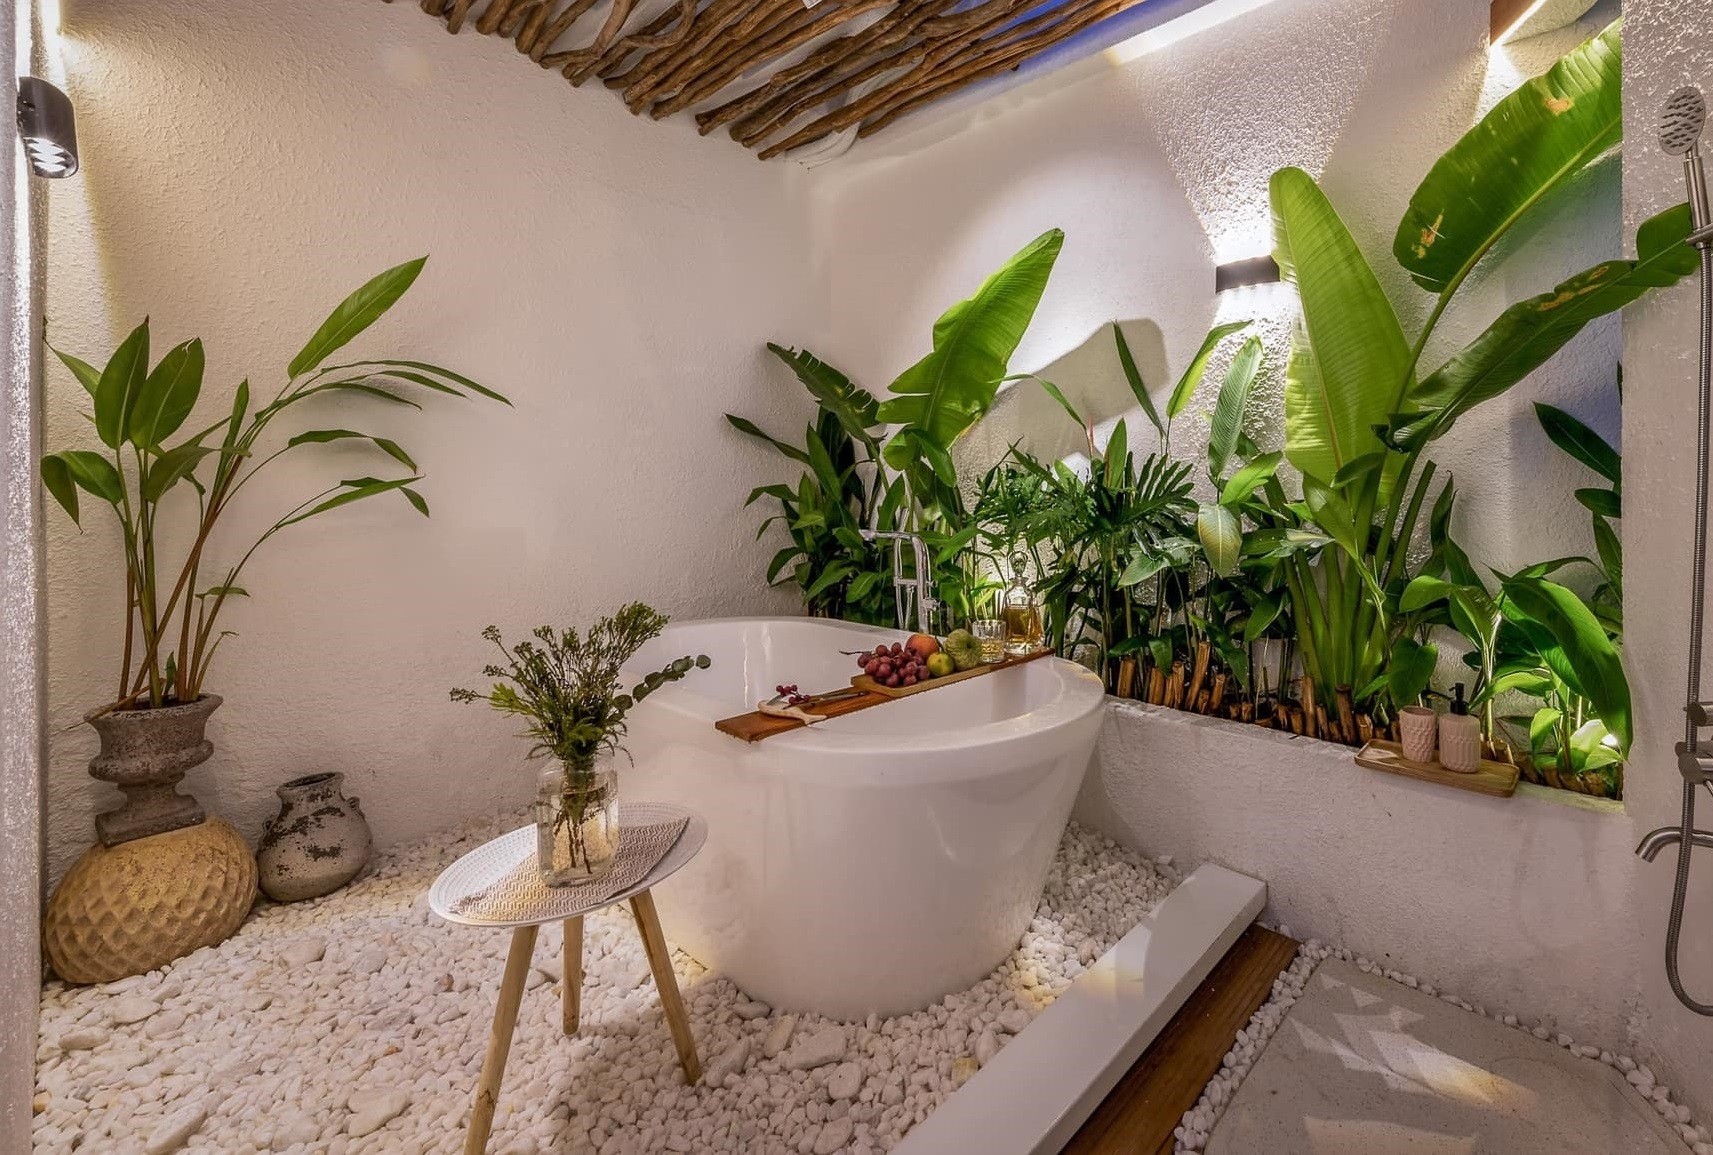 
Phòng tắm như nằm ở giữa khu rừng nhiệt đới, phần mái che có khe thoáng, lấy gió và lấy sáng
